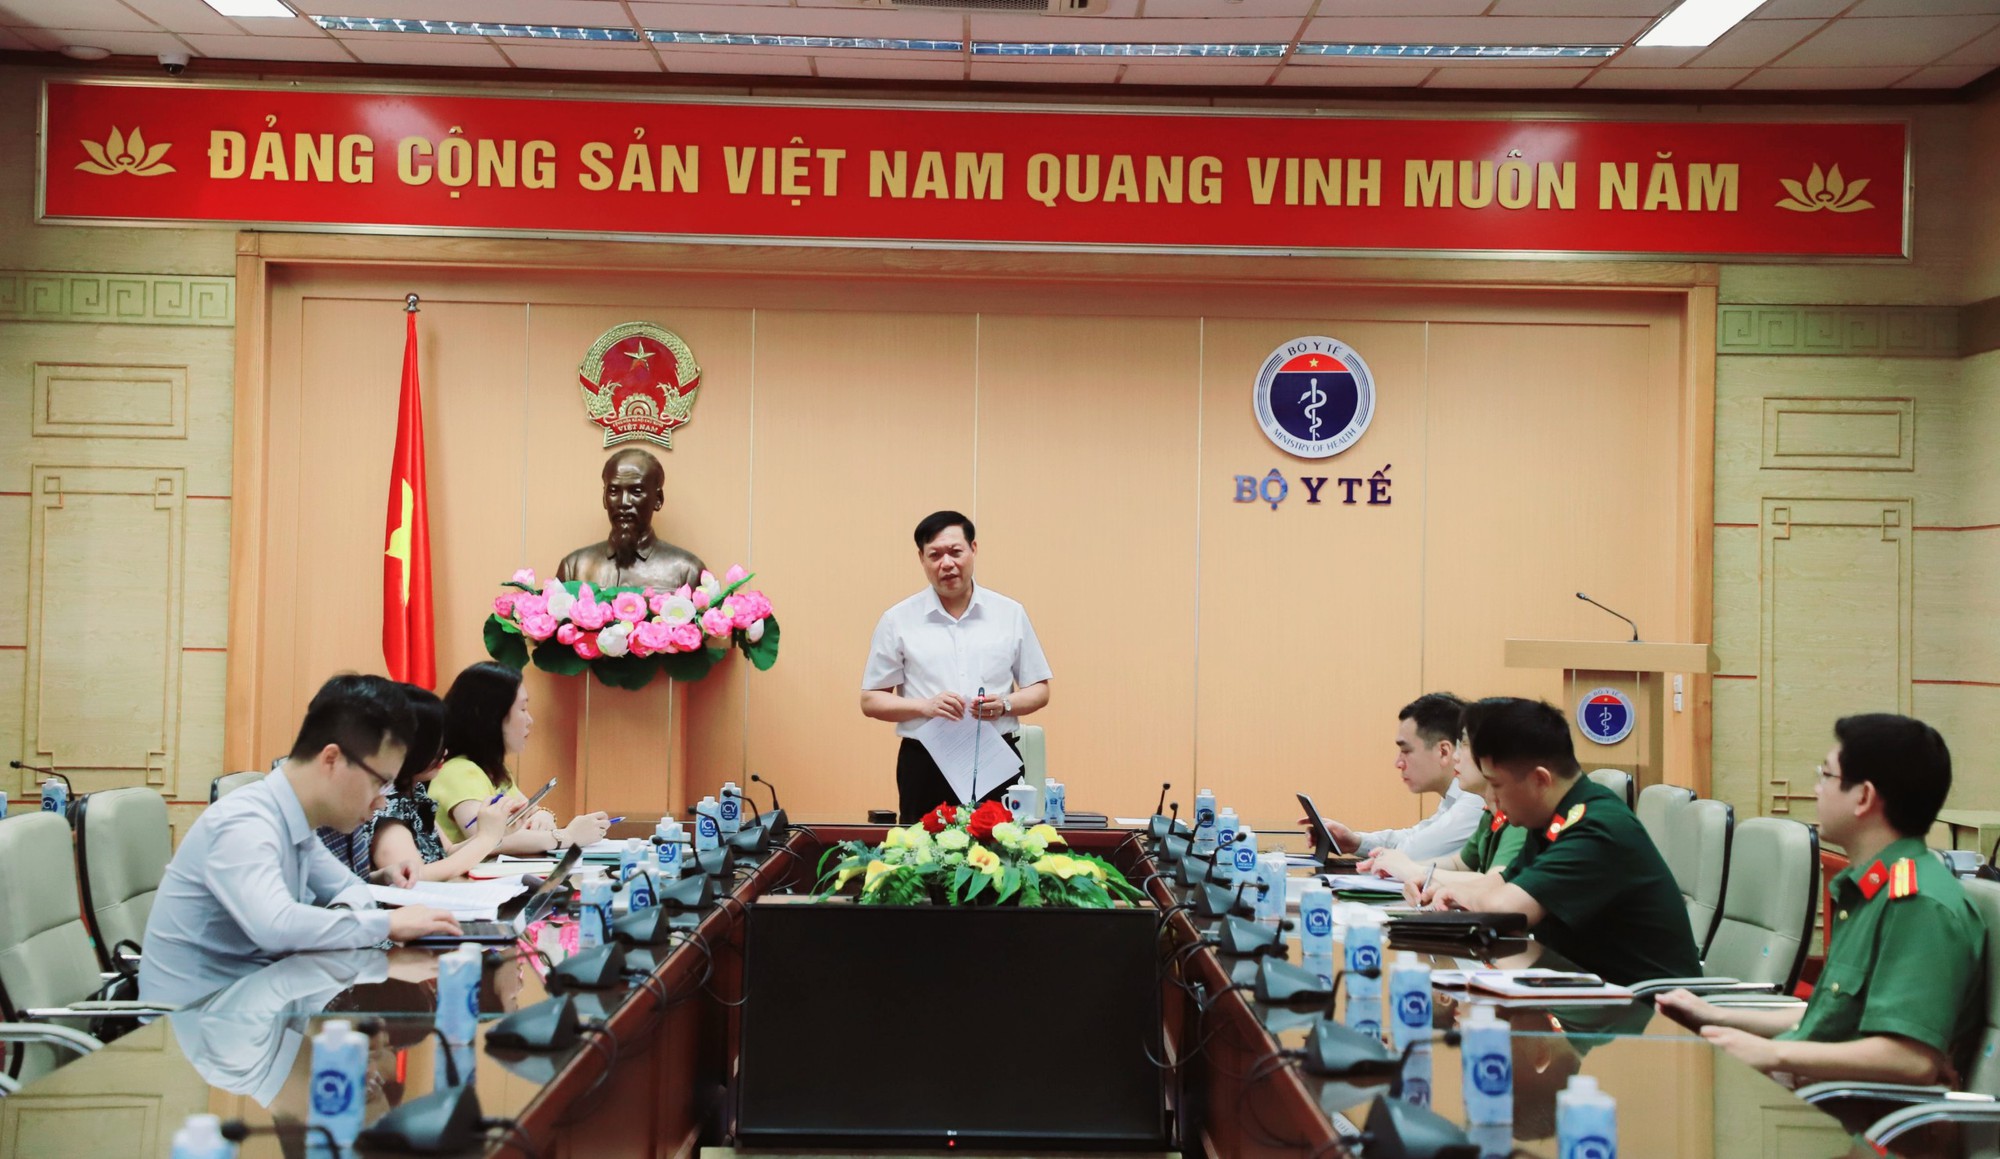 Thứ trưởng Đỗ Xuân Tuyên: Trước 30/6, các tỉnh, thành phía Nam phải tiêm hết lô vaccine phòng COVID-19 đã phân bổ  - Ảnh 2.